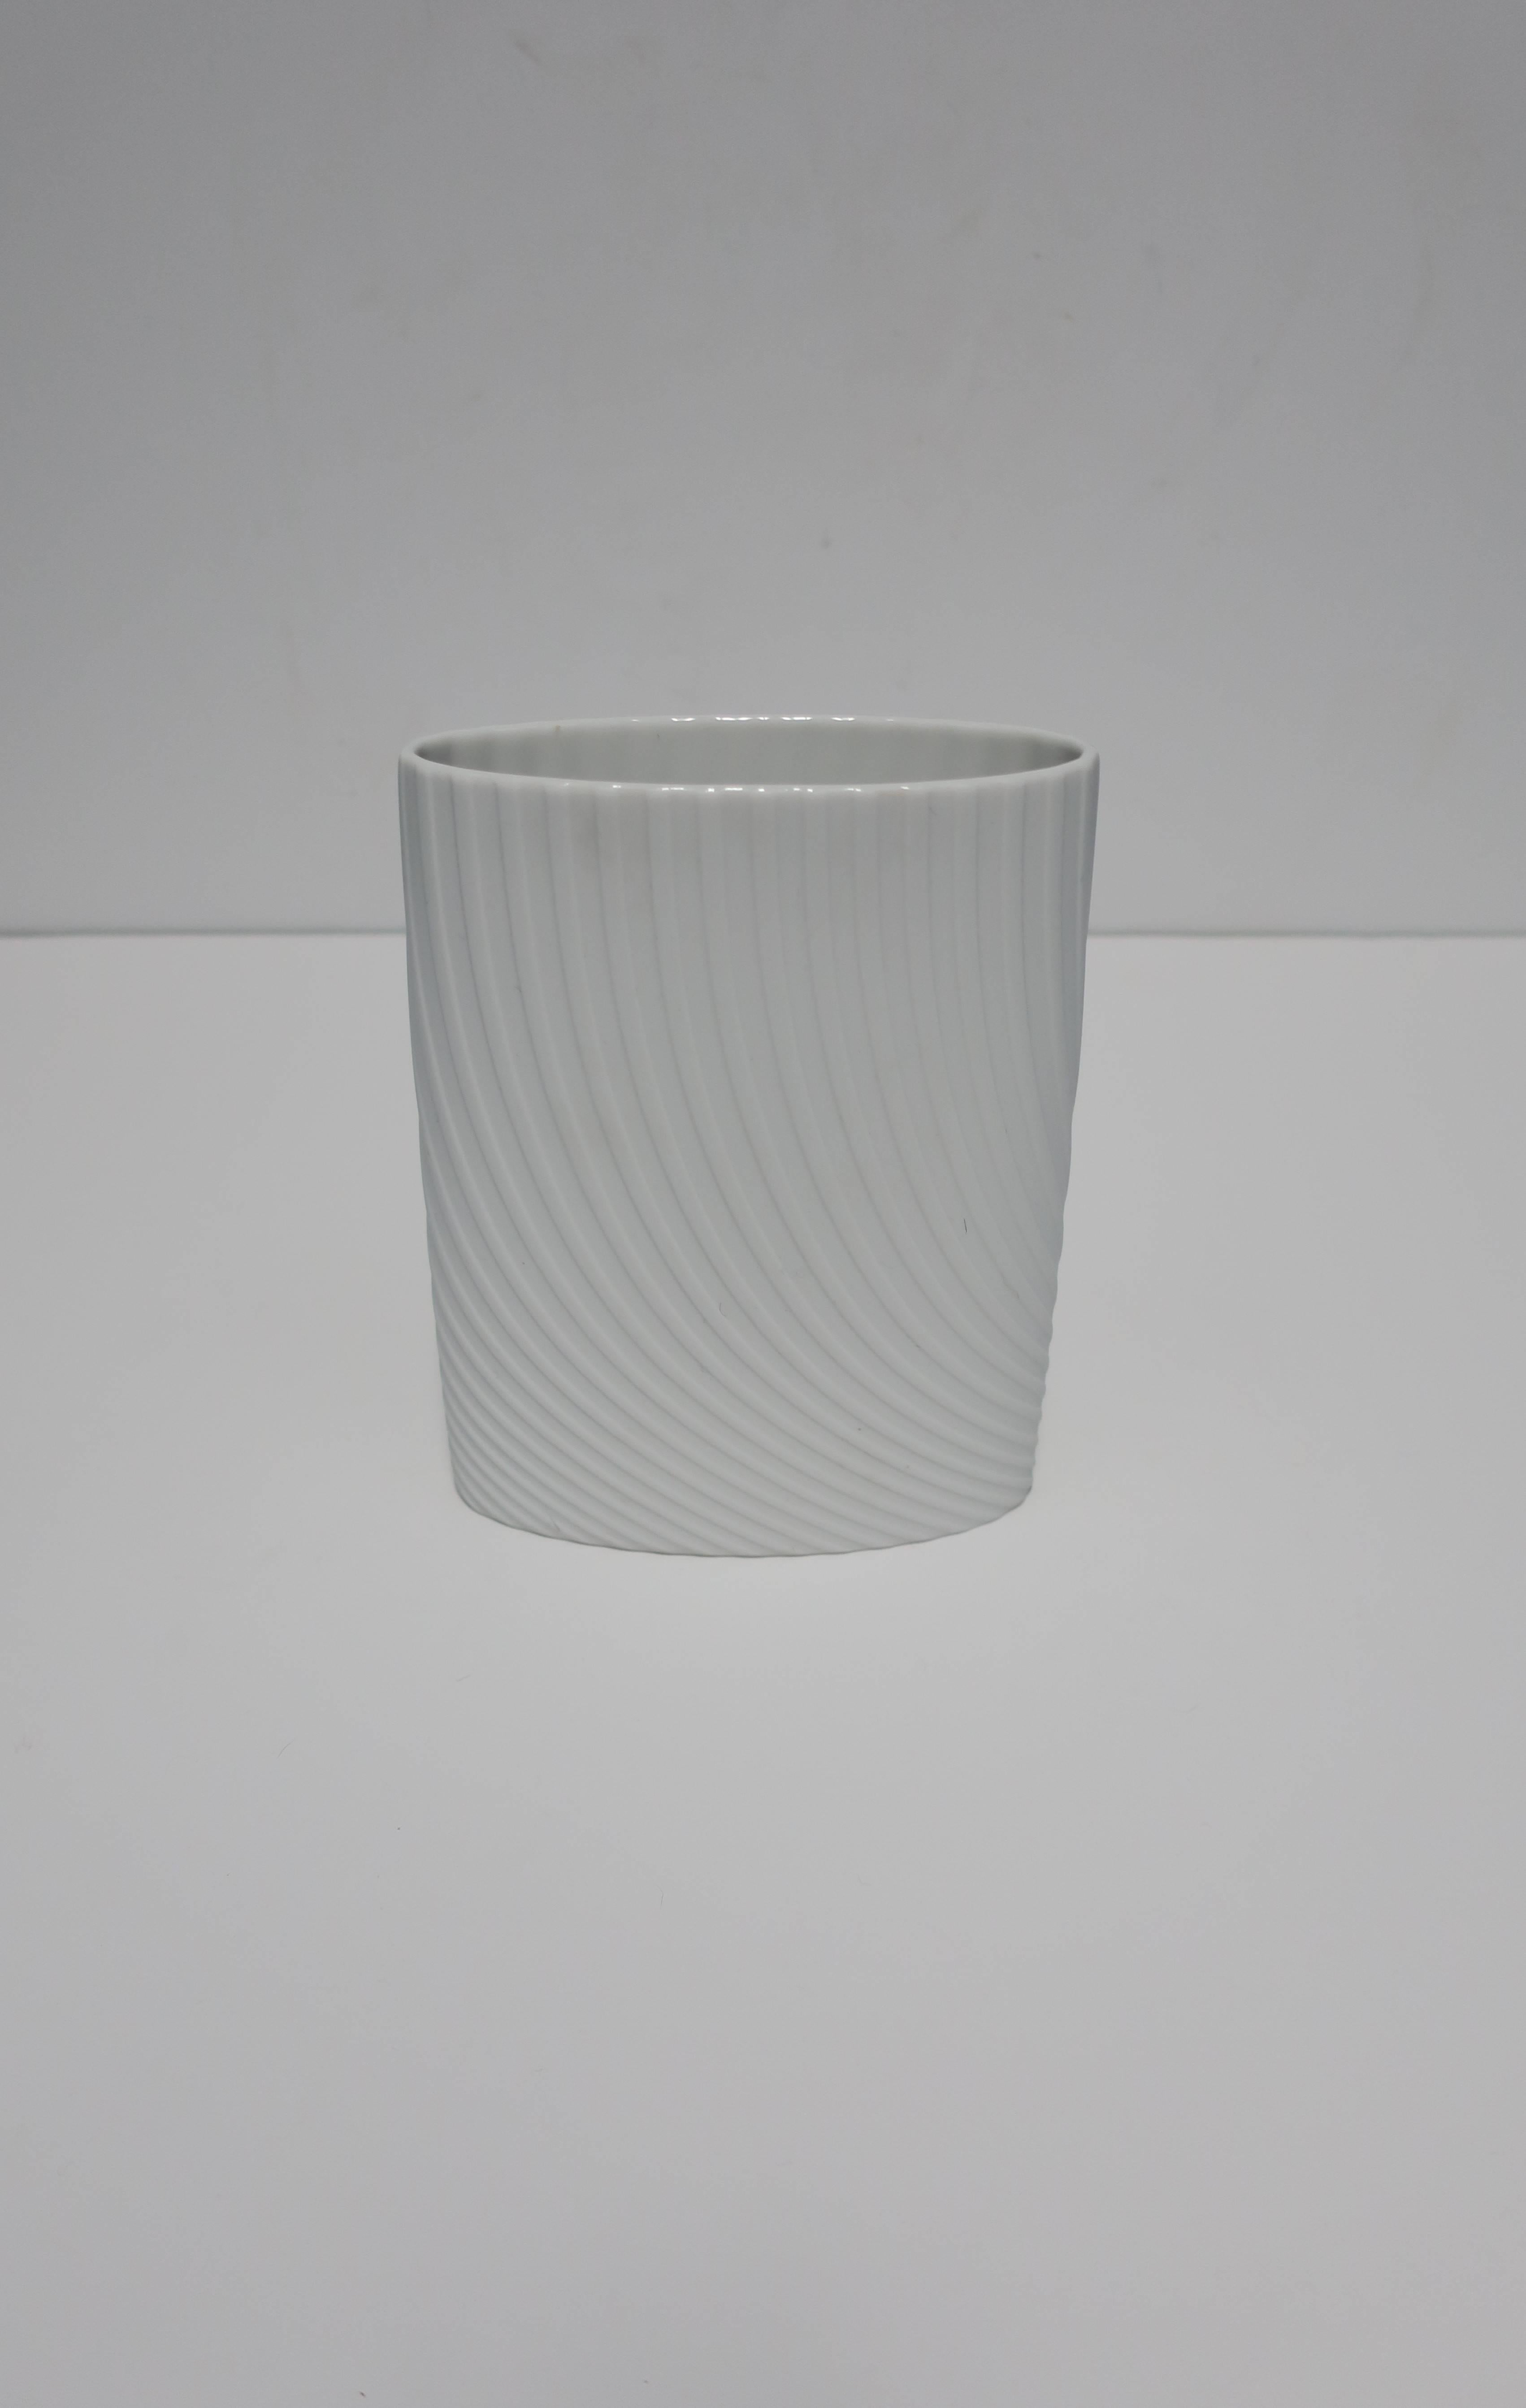 Eine schöne ovale Keramikvase aus weißem, mattem Porzellan von Rosenthal 'Studio-Line', Deutschland. Mit Markierungszeichen und Designersignatur auf der Unterseite, wie in Bild #10 gezeigt. Schön mit oder ohne Blumen. 

Die Abmessungen umfassen: